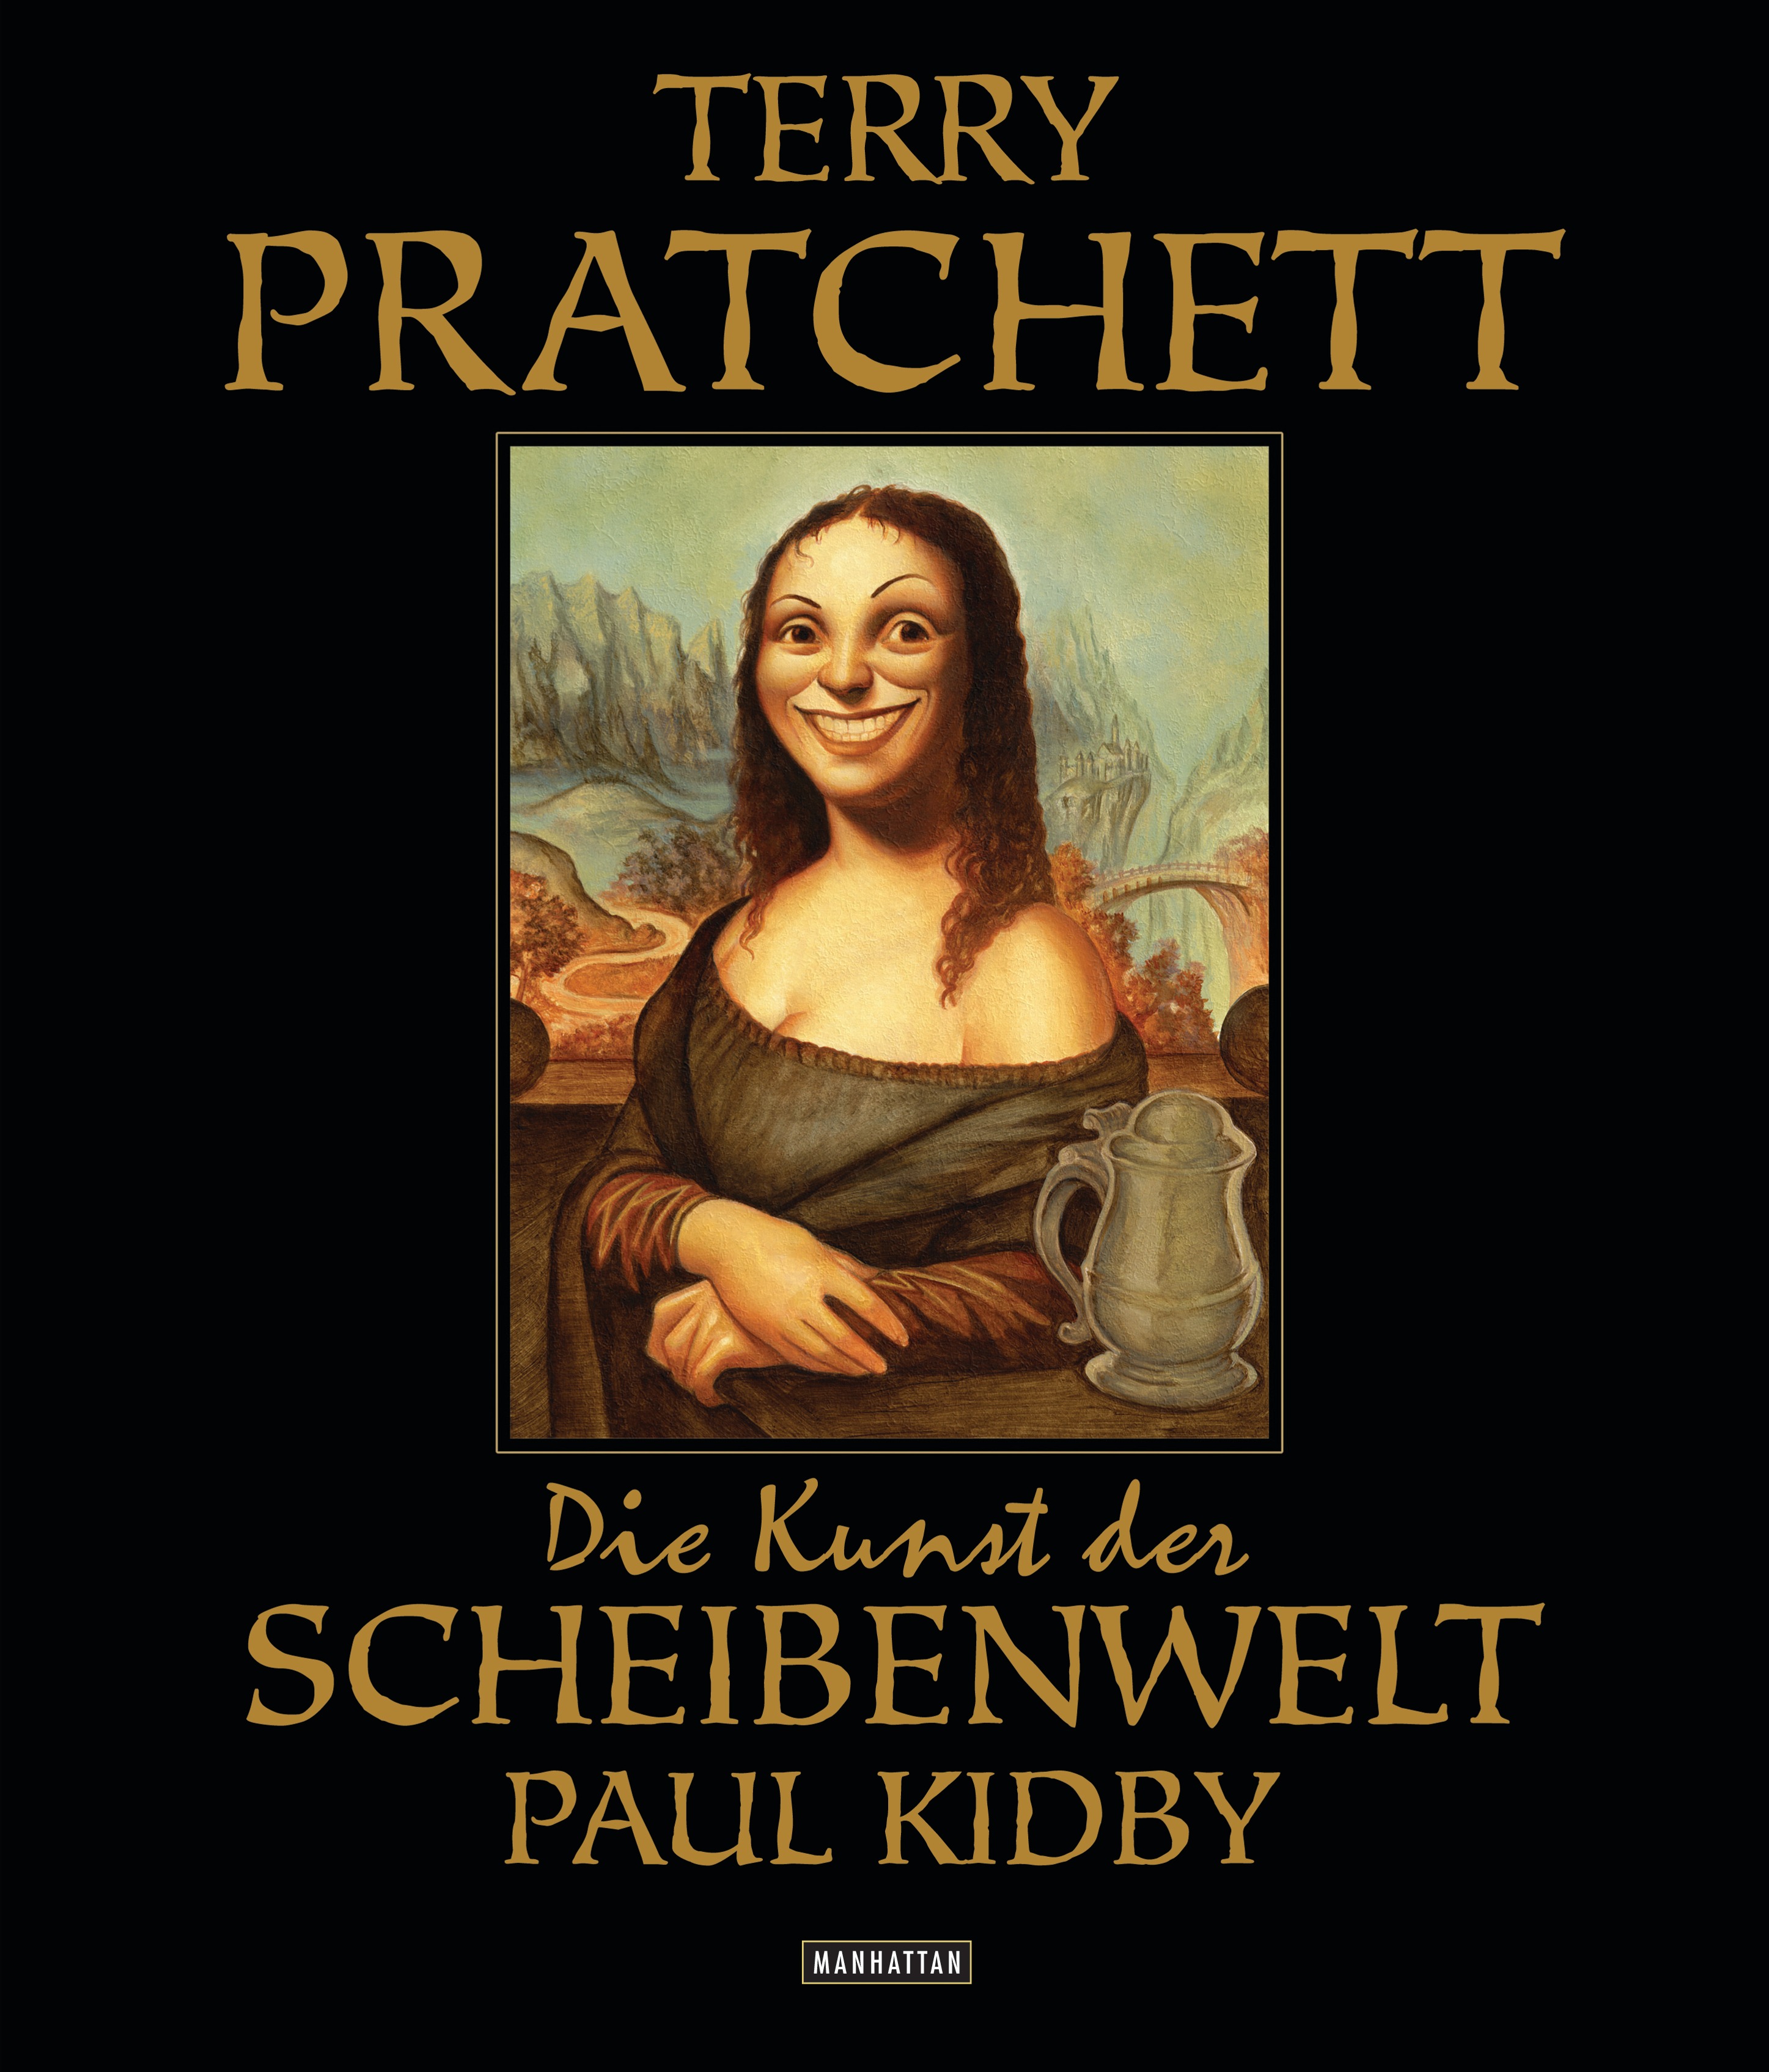 Police station difficult workshop Terry Pratchett: Die Kunst der Scheibenwelt - Buch - Manhattan Verlag